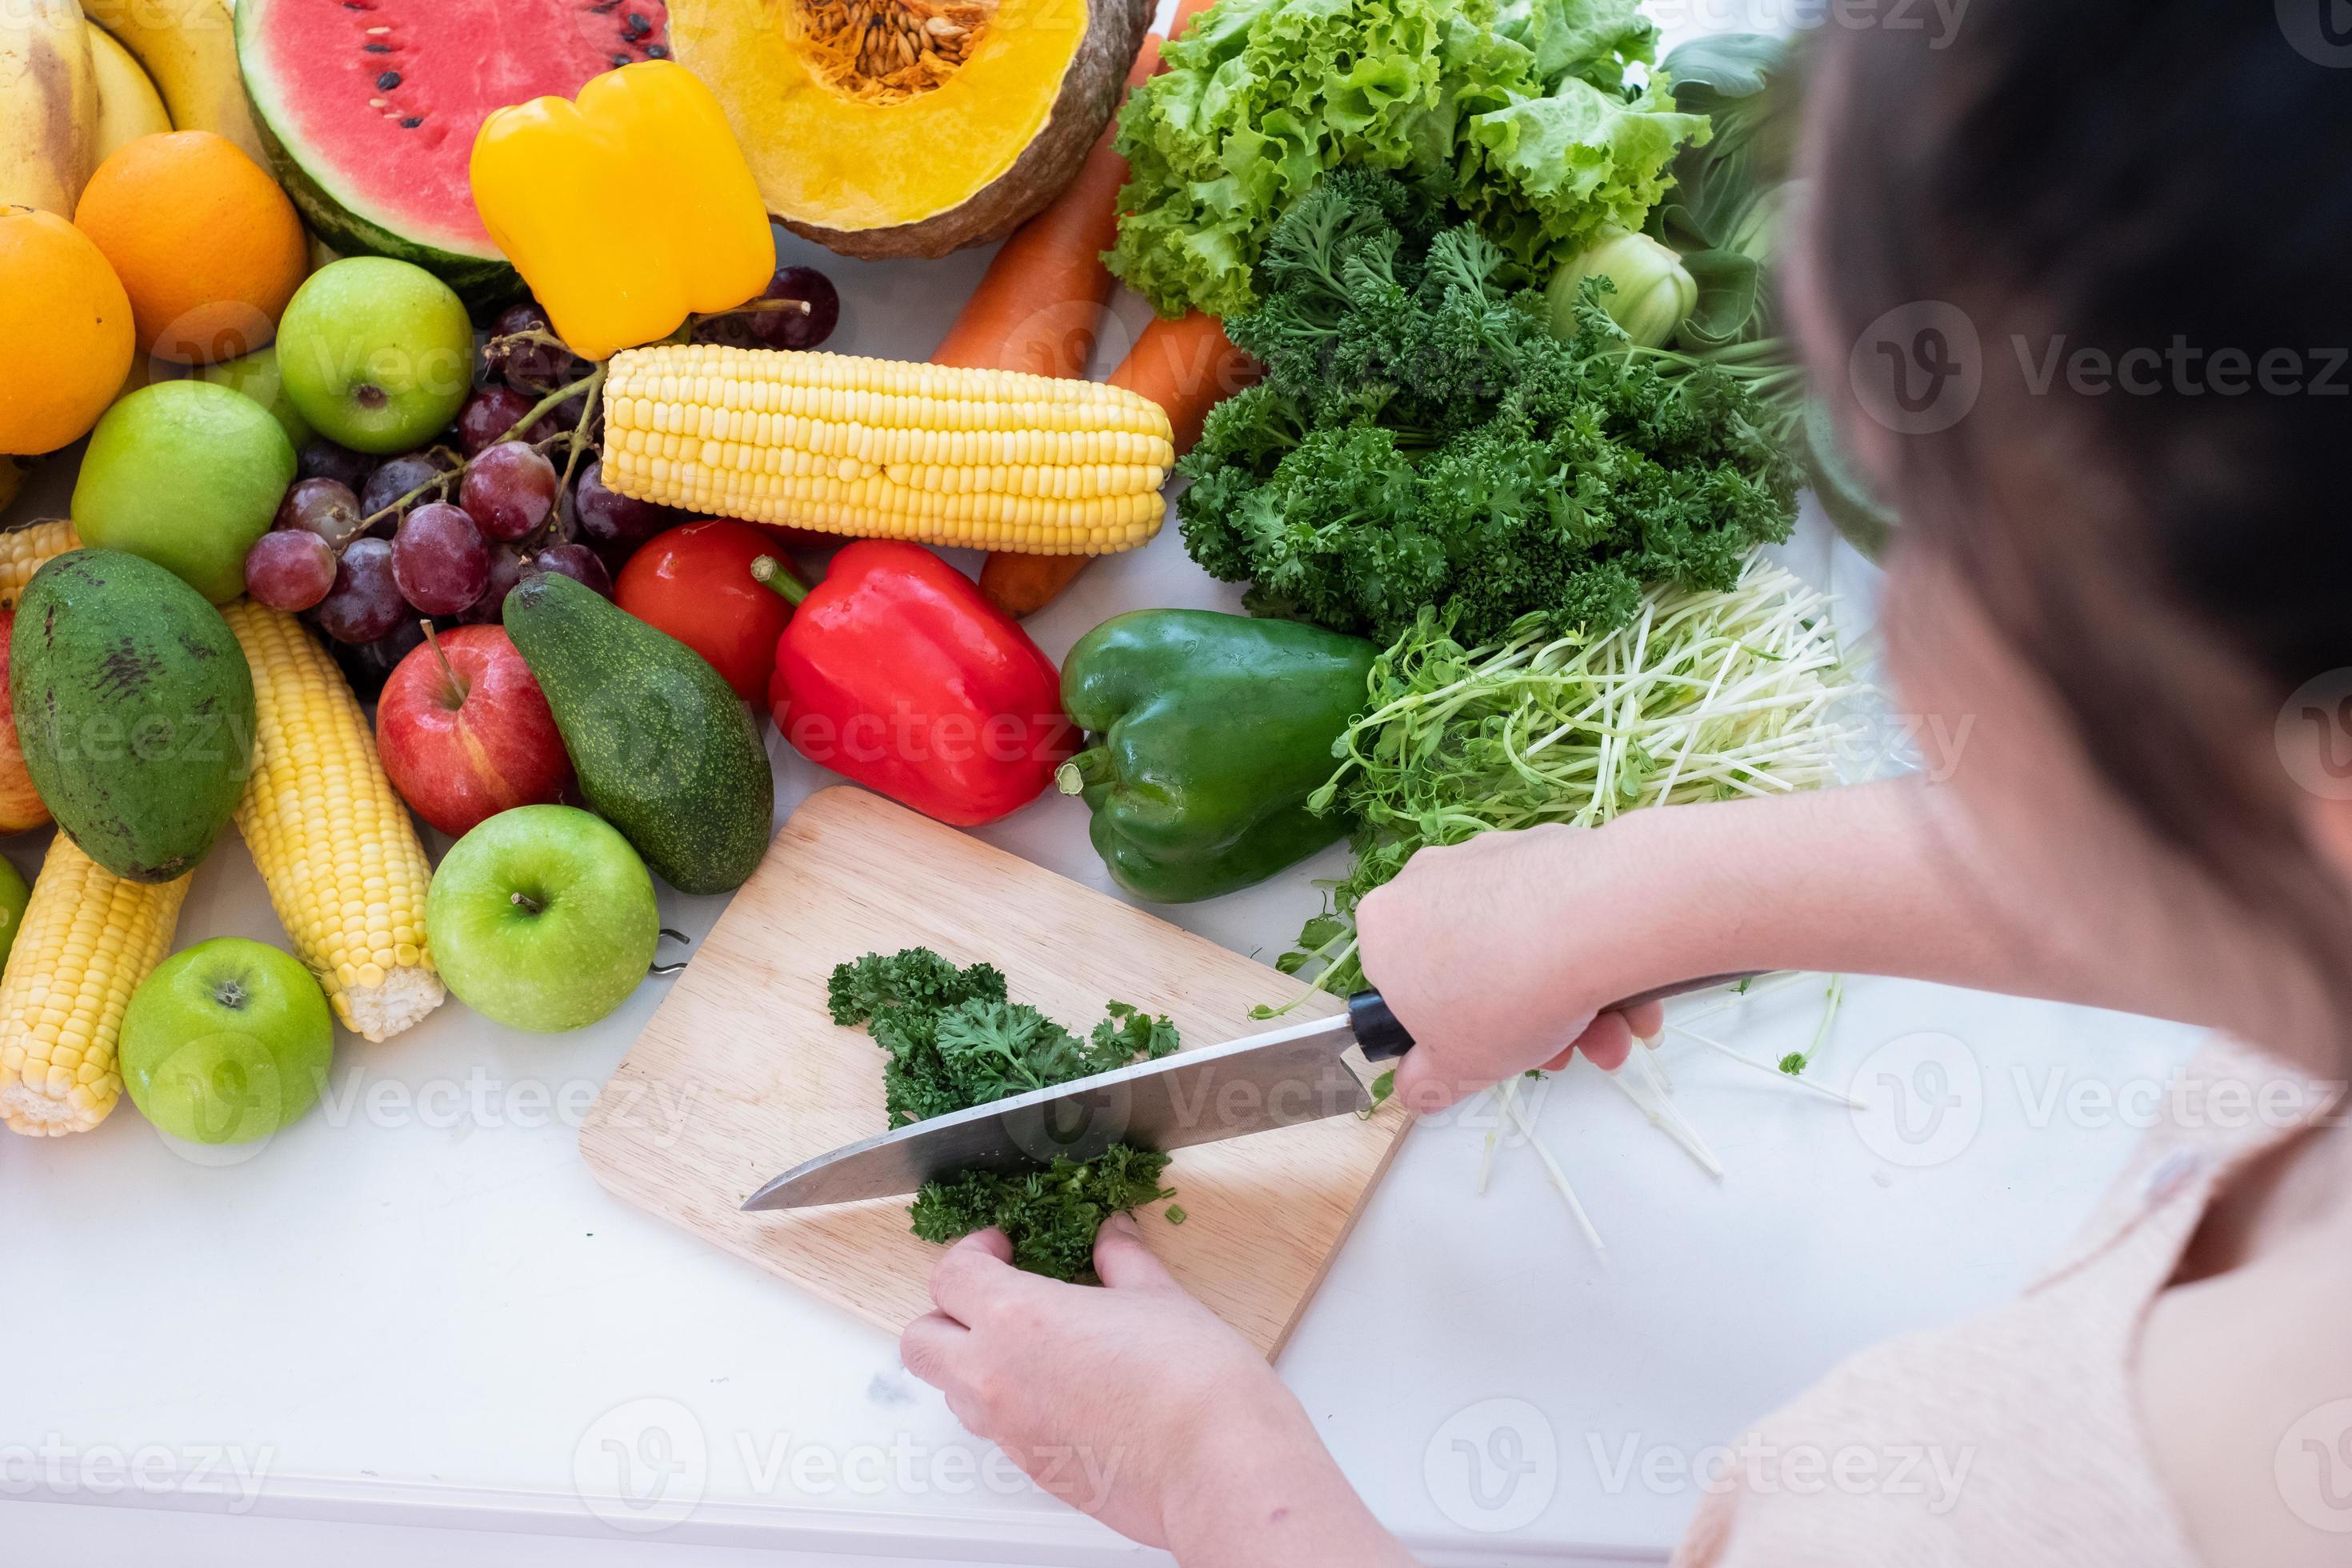 een personen handen zijn zichtbaar Holding een mes en hakken groenten Aan een snijdend bord de achtergrond is een wit gordijn Stockfoto